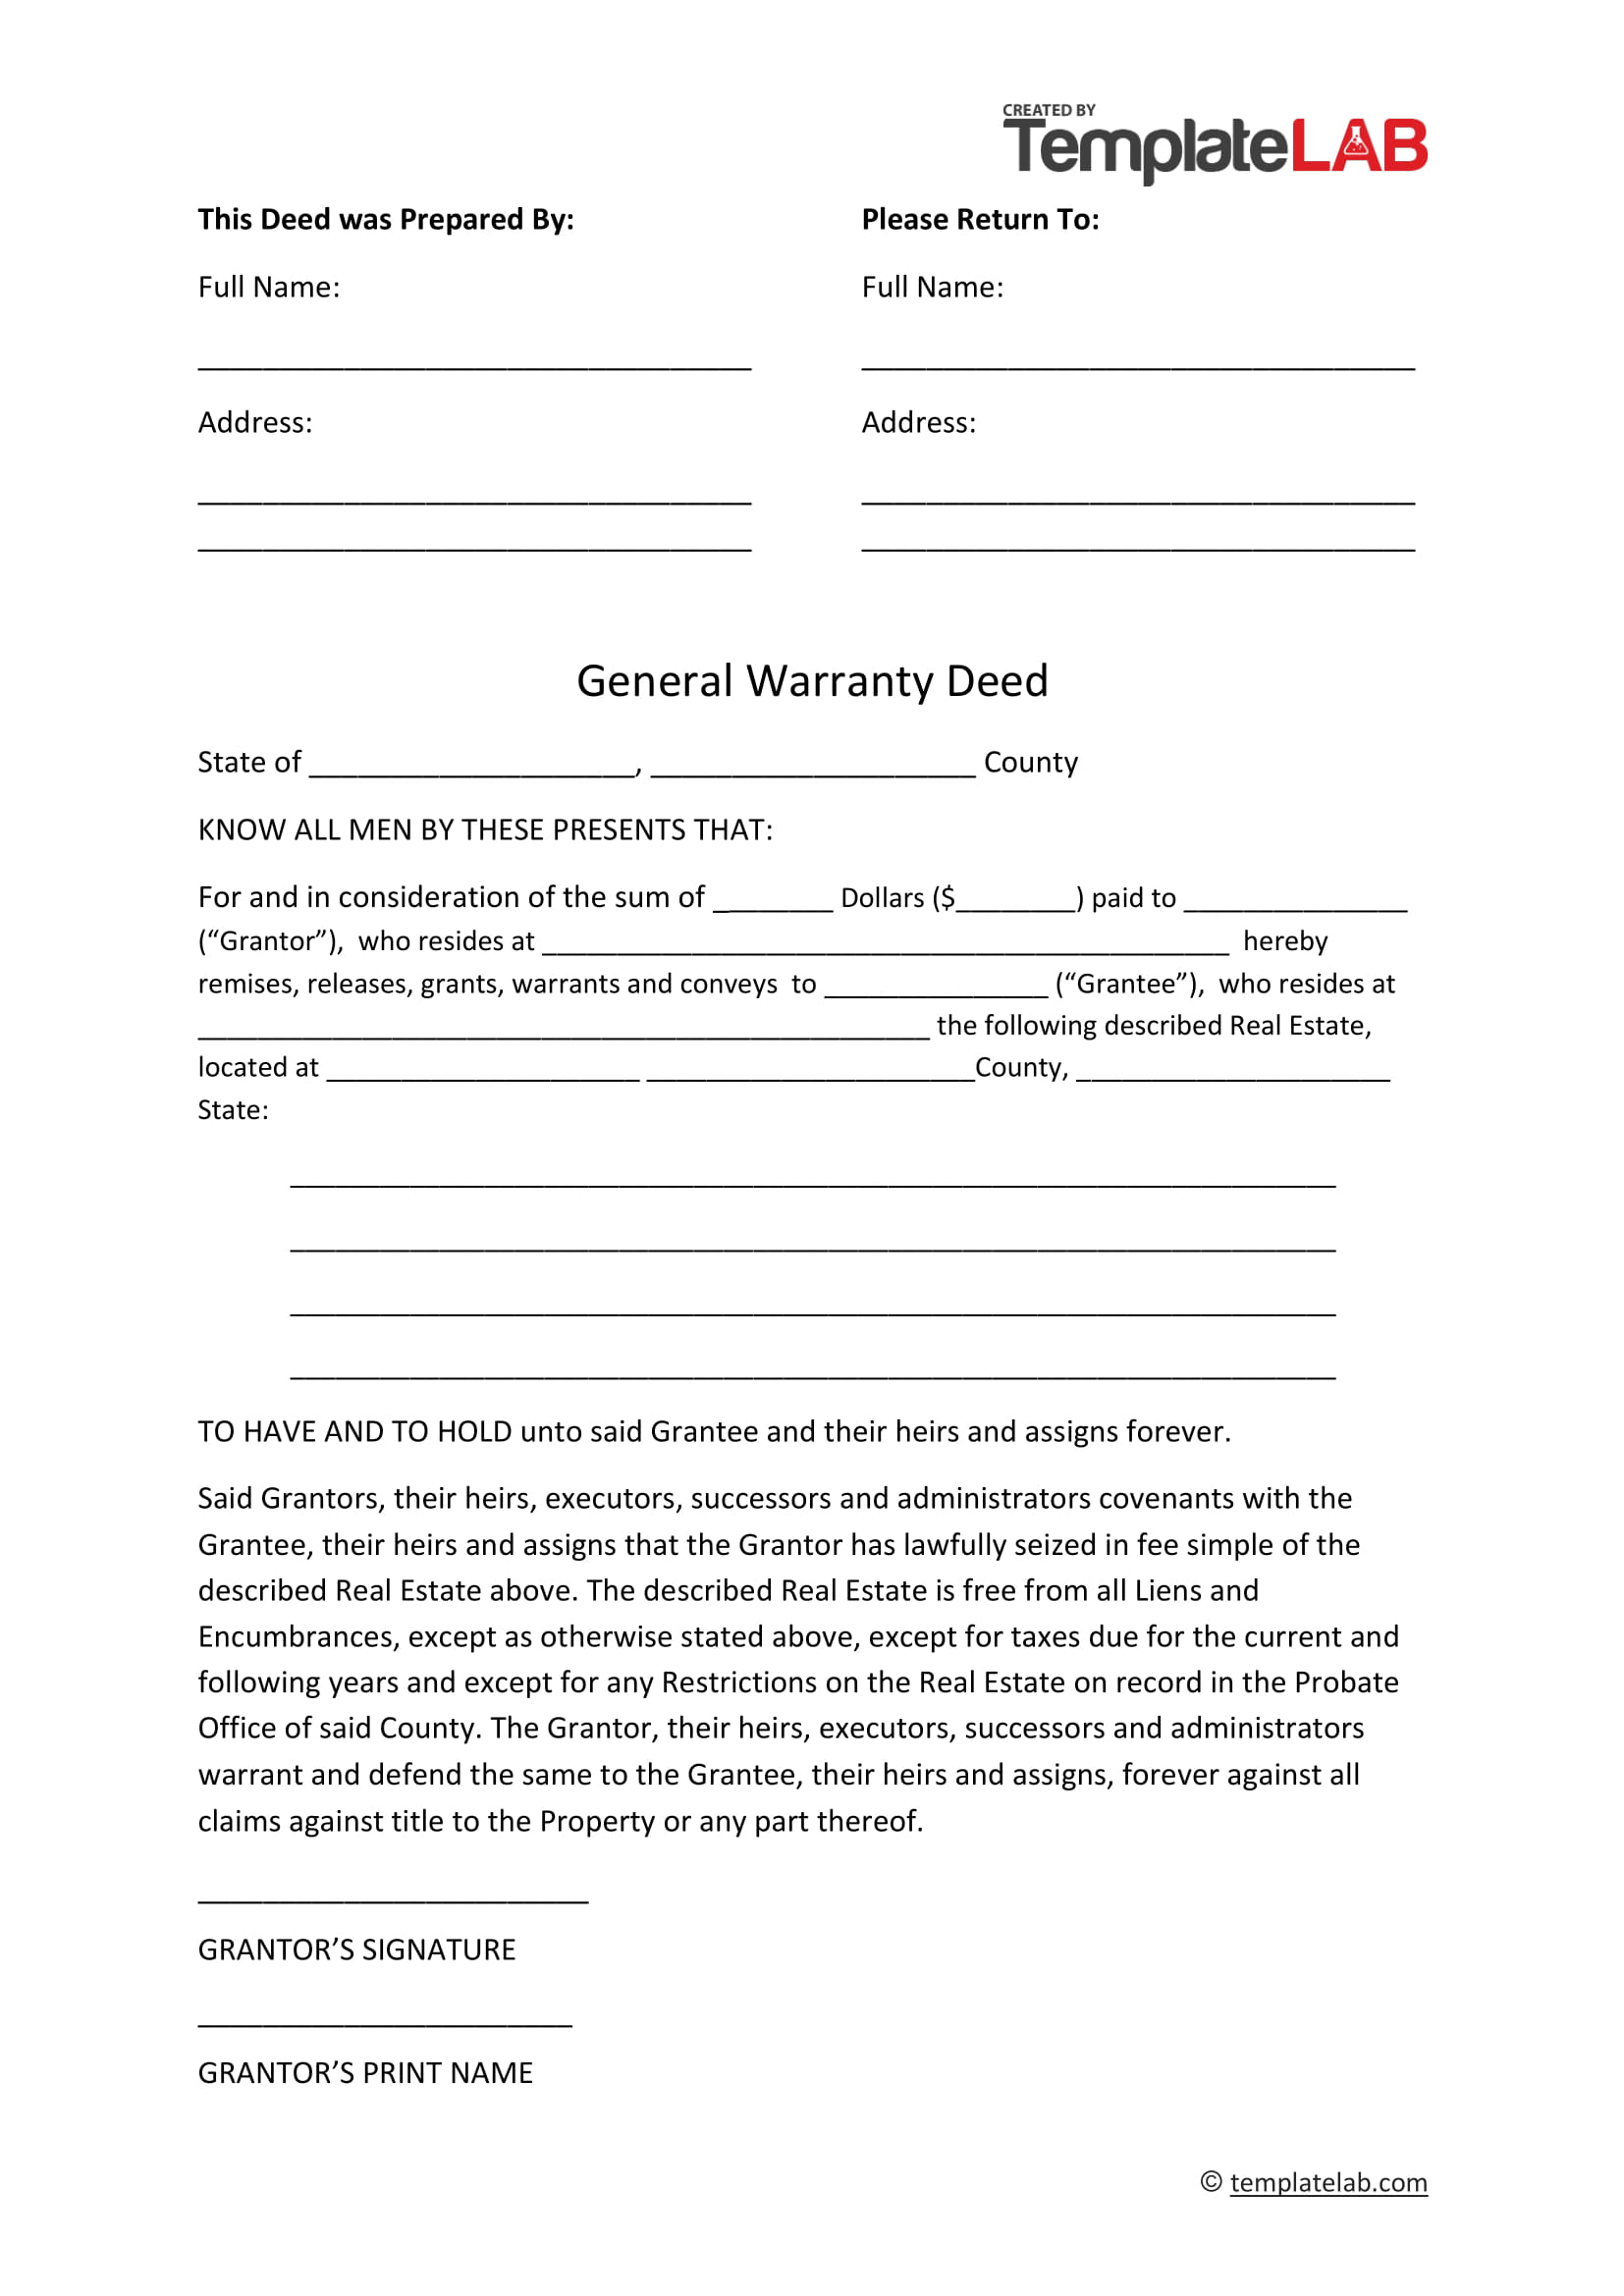 Free General Warranty Deed